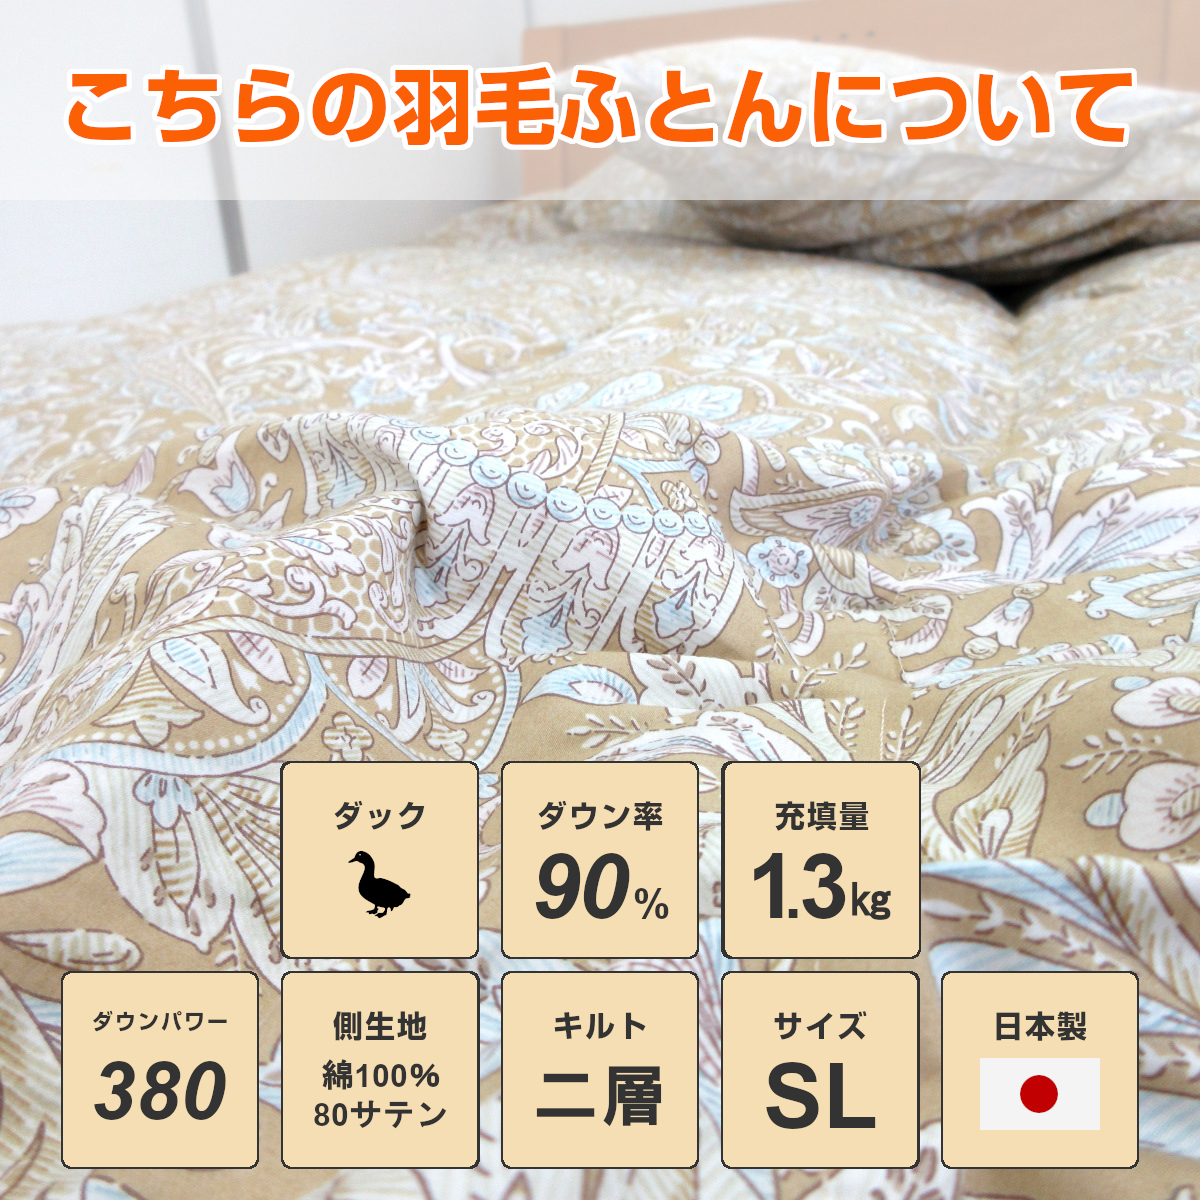 羽毛布団 日本製 エクセルゴールド ホワイトダウン90% 増量タイプ 1.3kg-